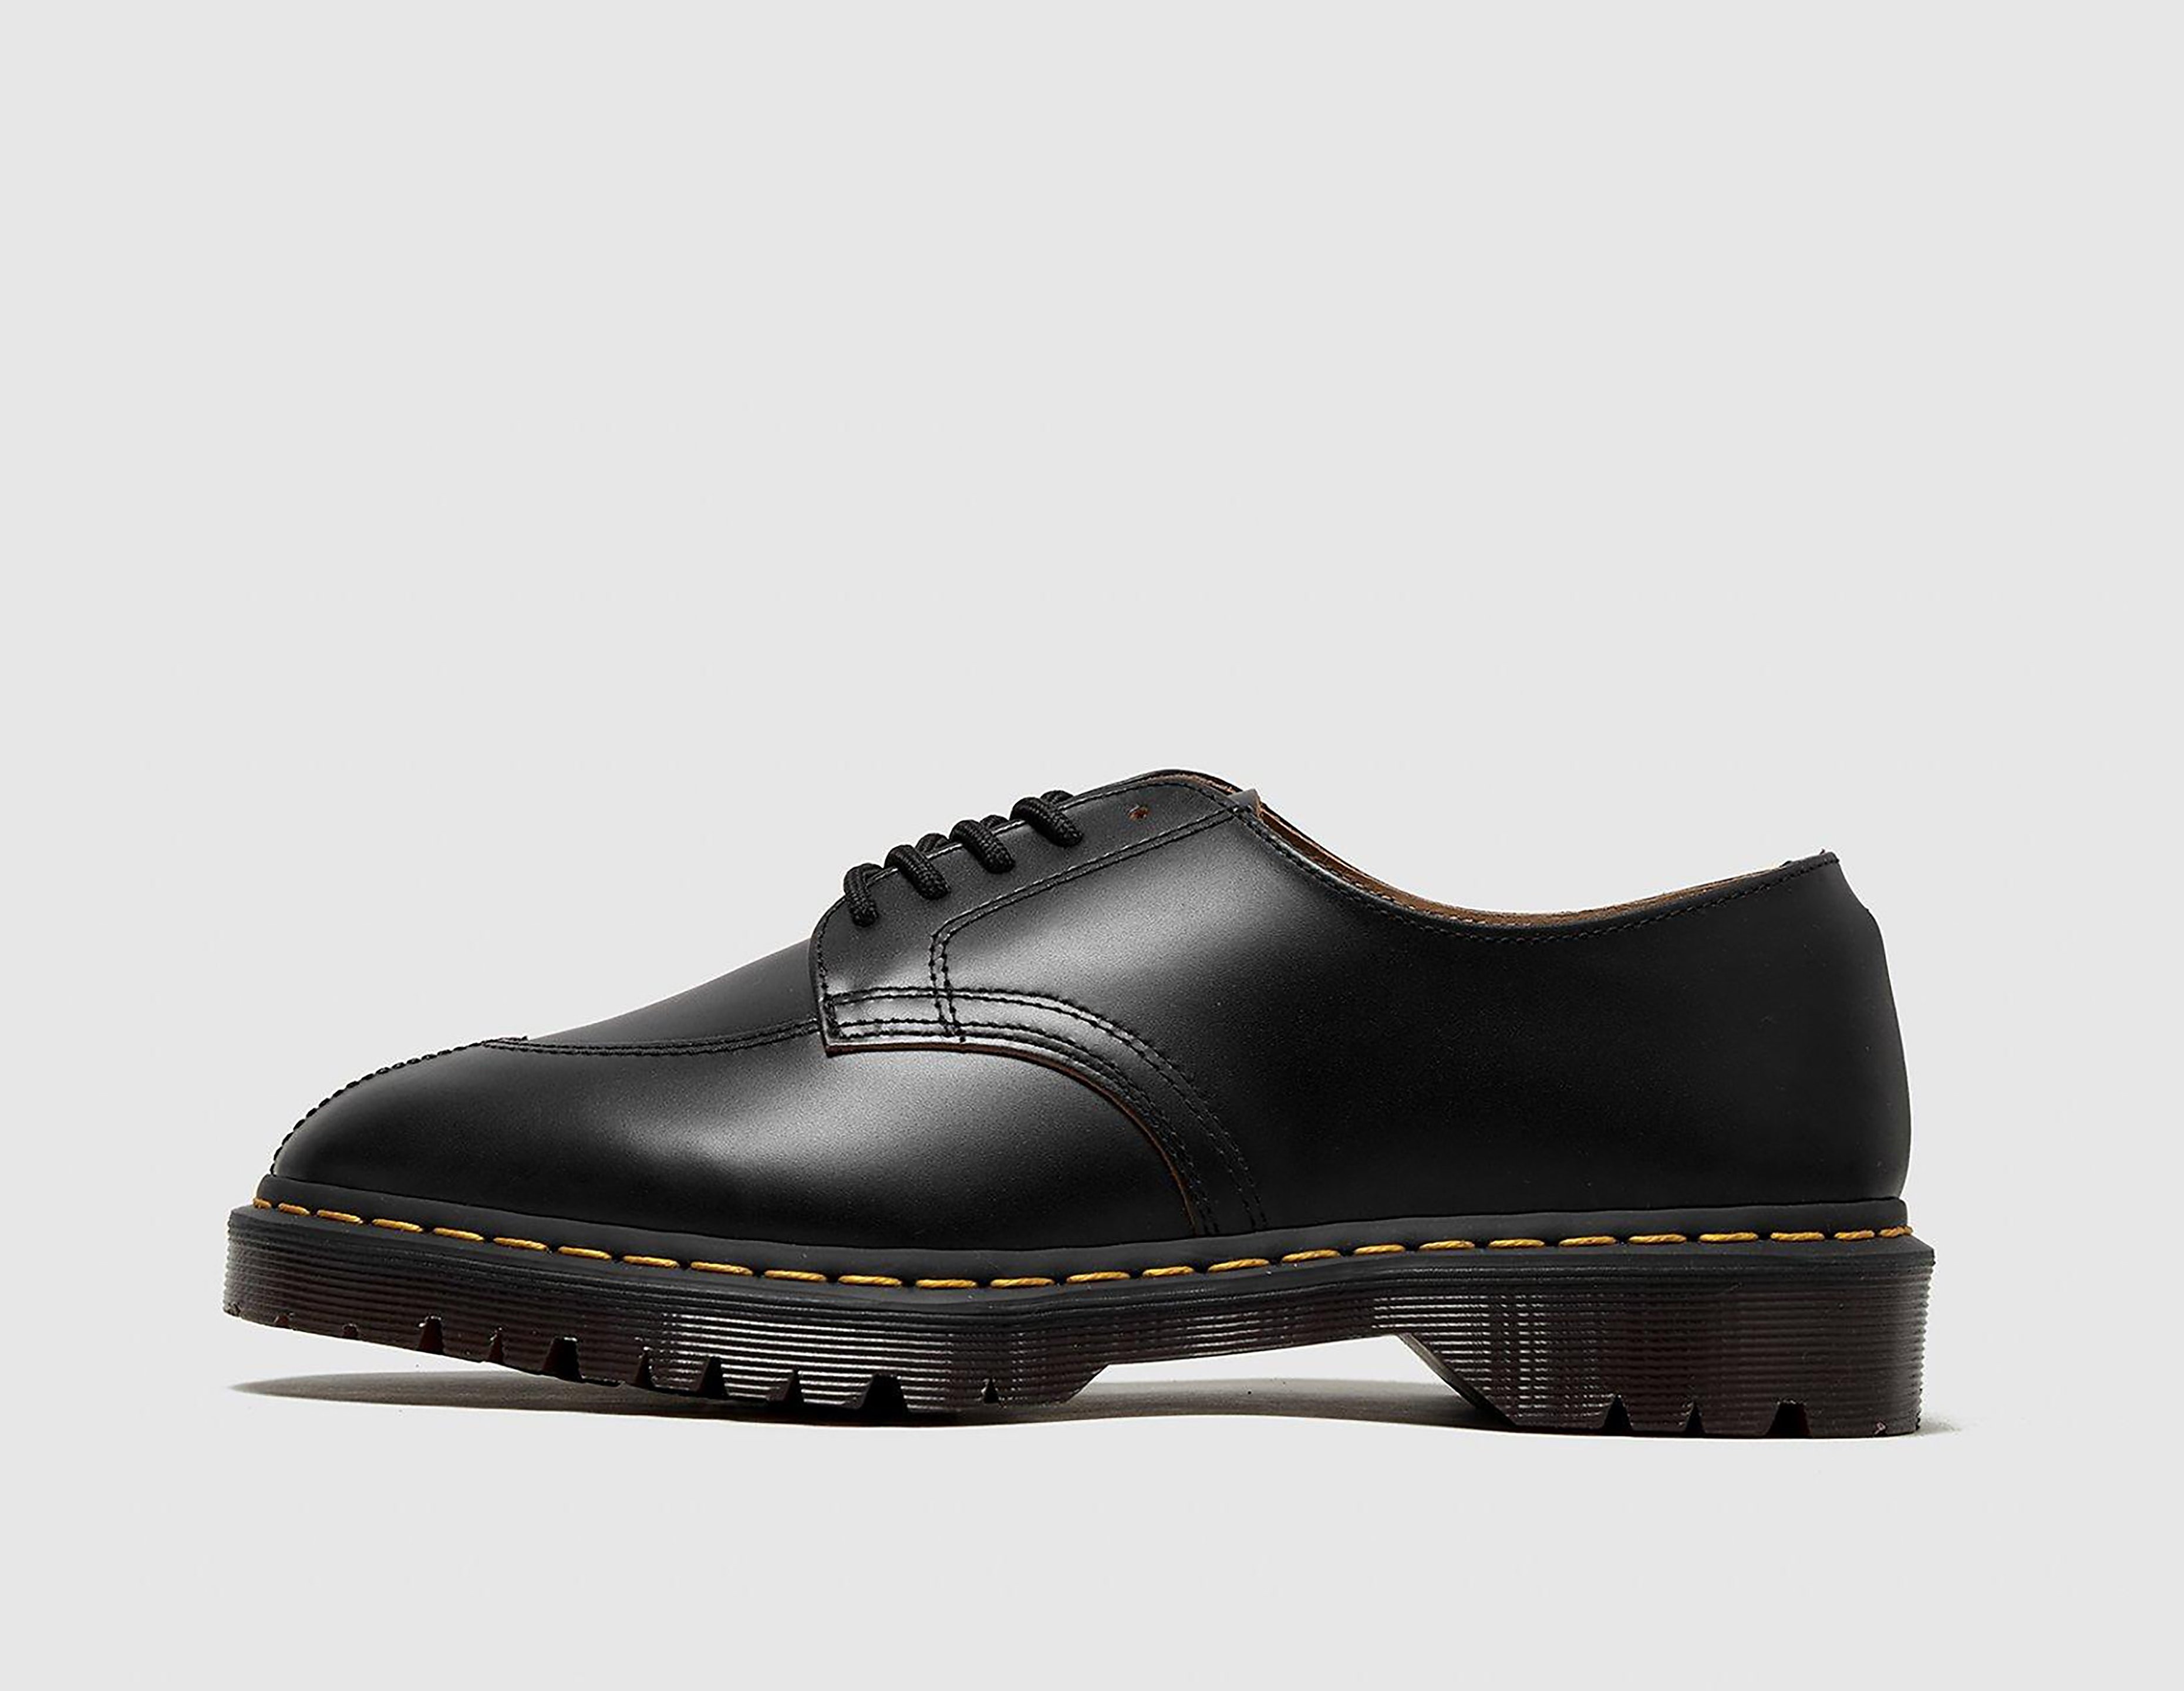 Dr. Martens 2046 Vintage Leather Derby Shoe